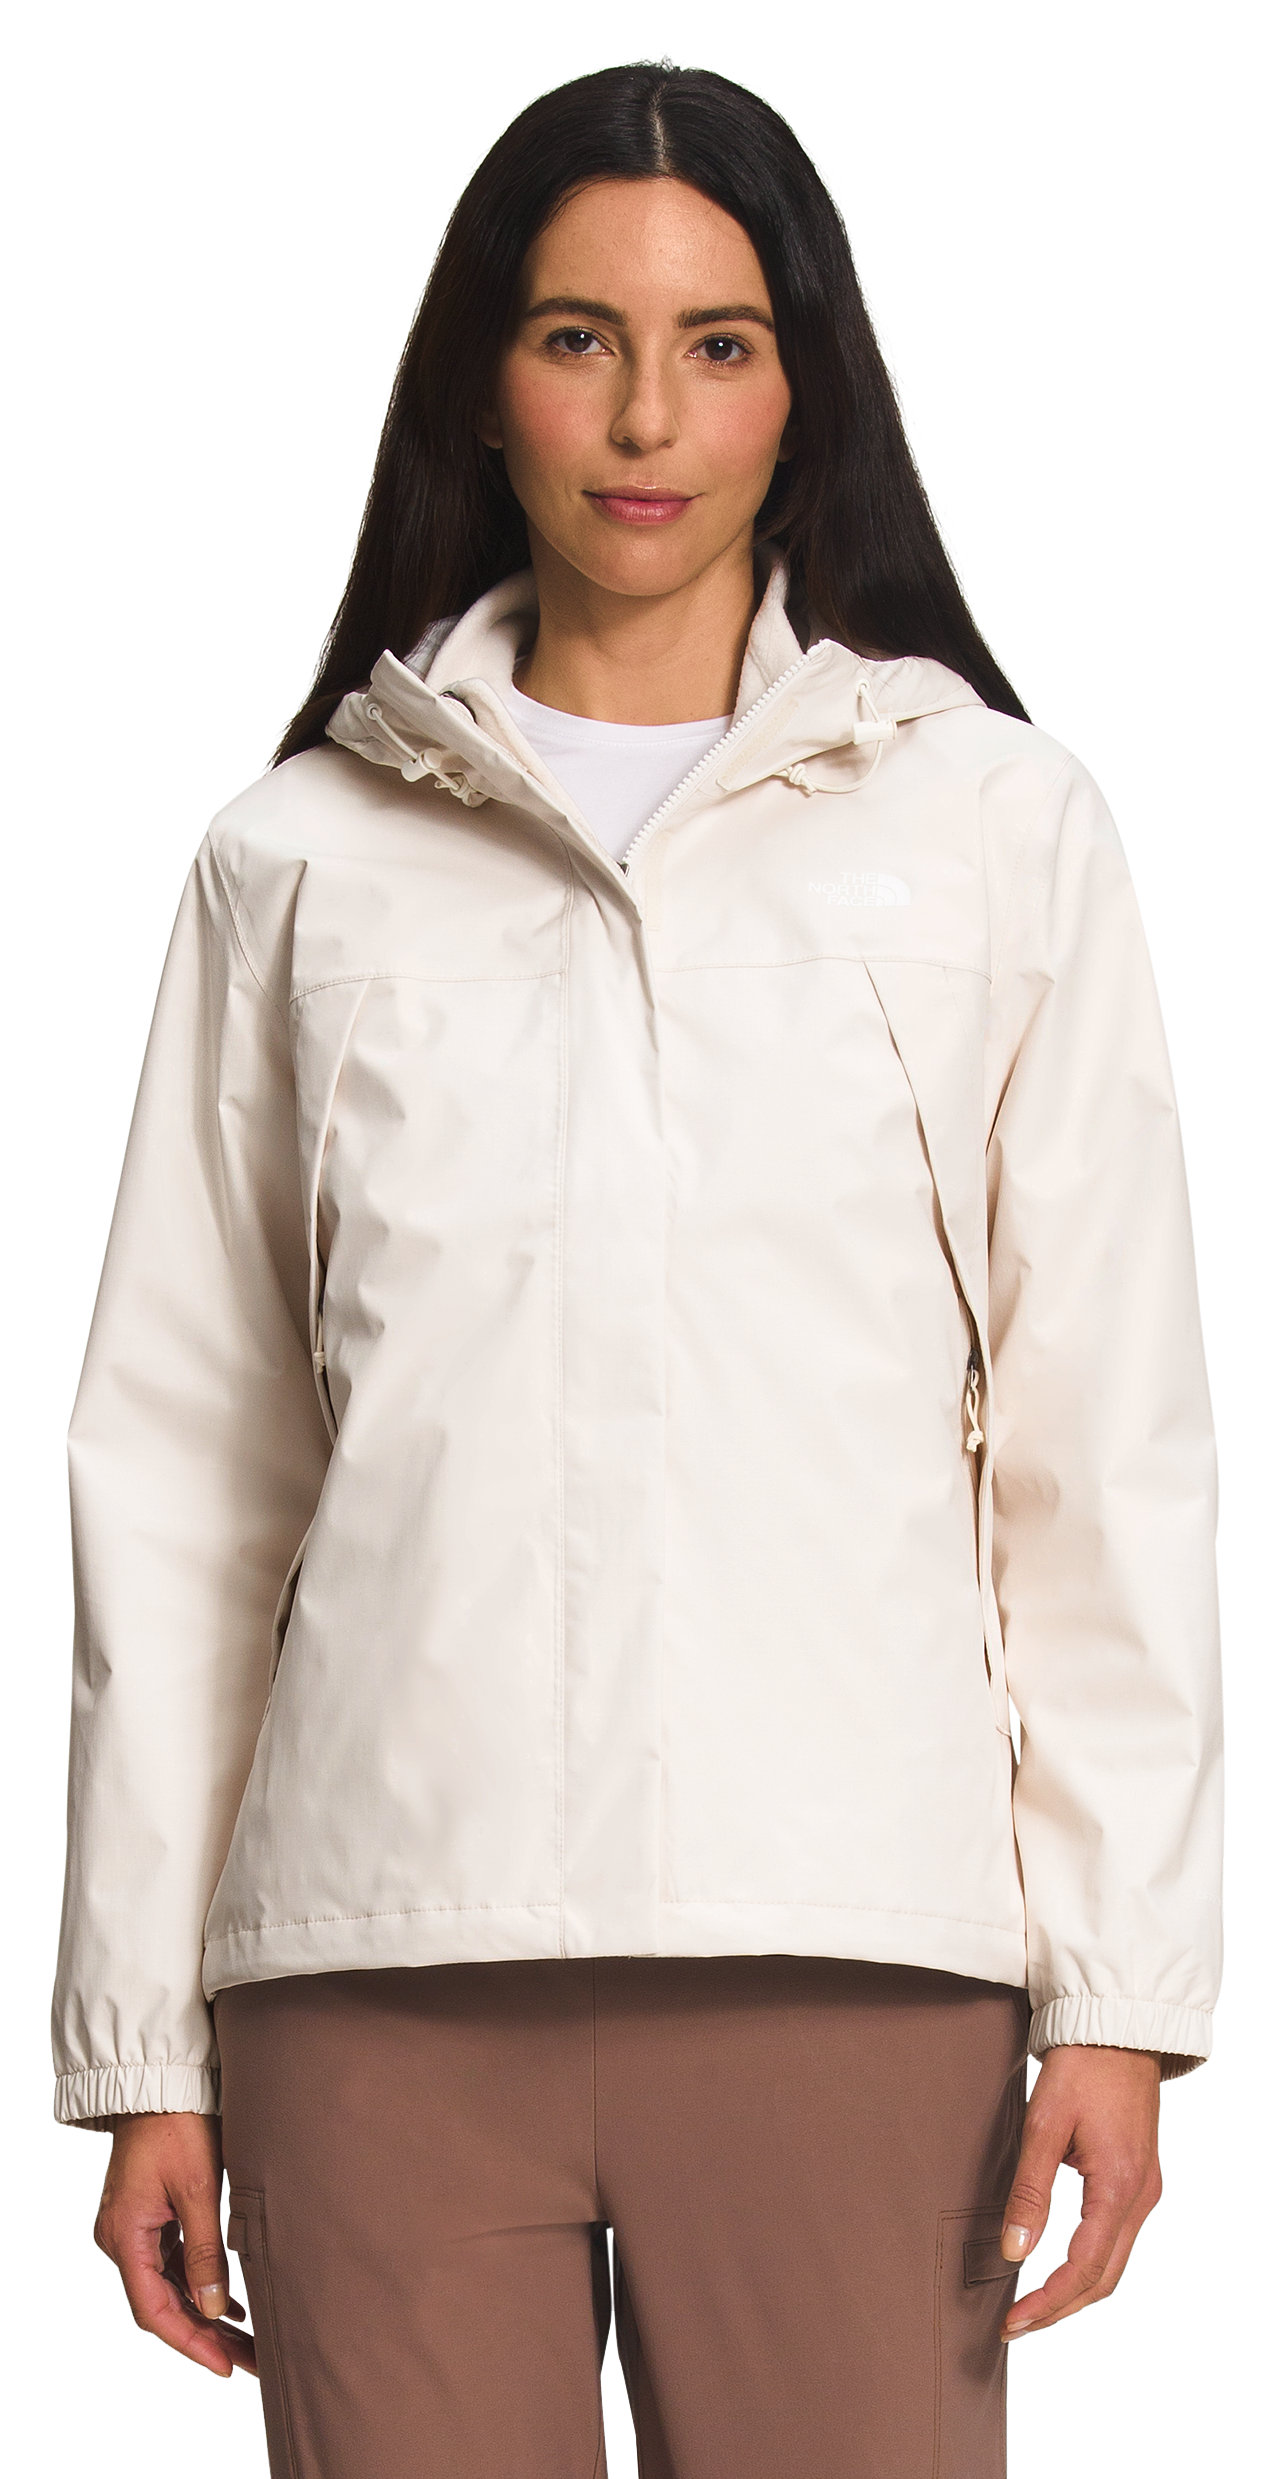 The North Face Antora Triclimate Jacket for Ladies - Gardenia White/Gardenia White - S